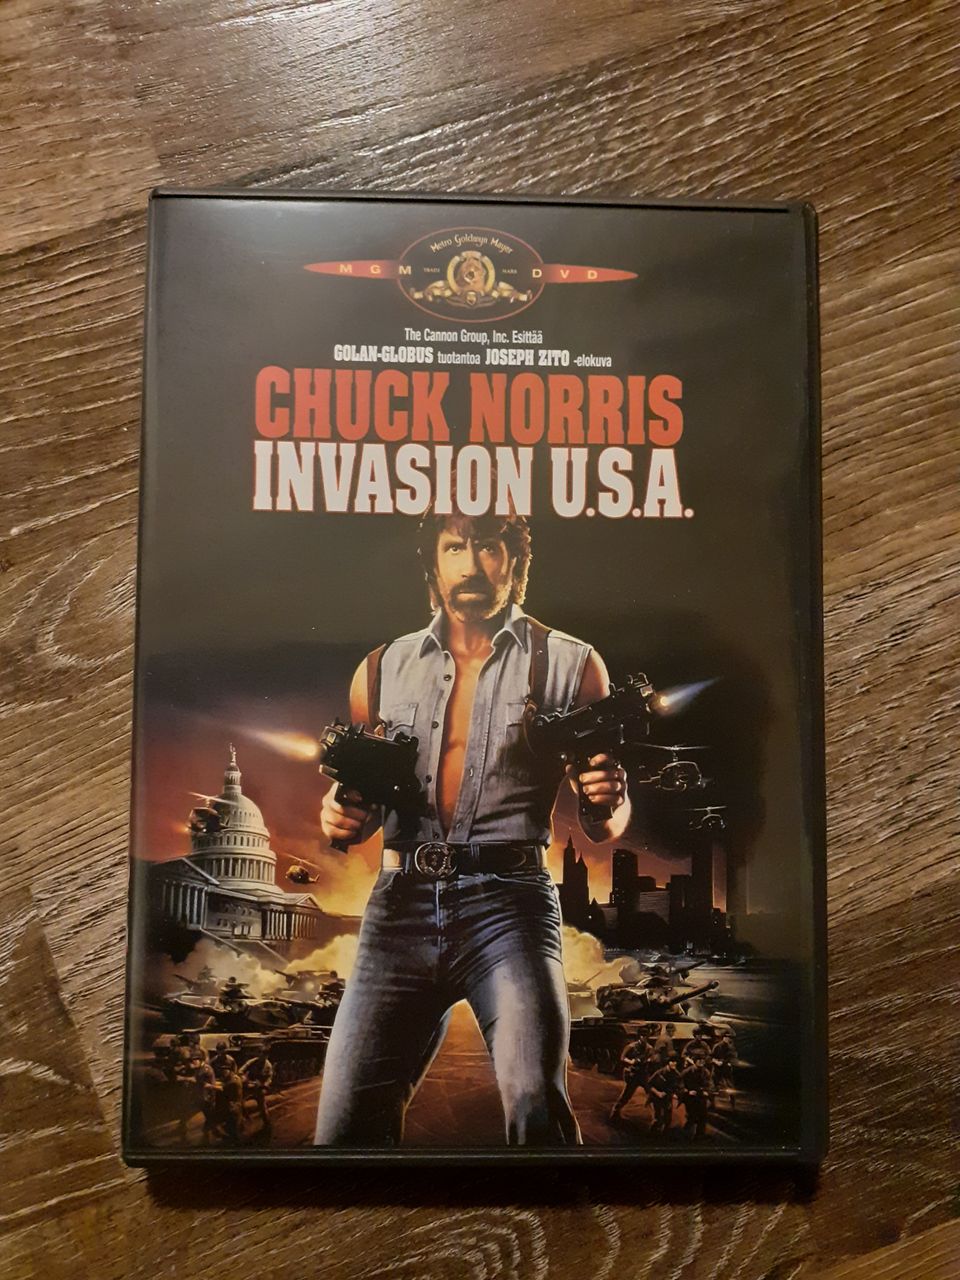 Invasion U.S.A. - Chuck Norris